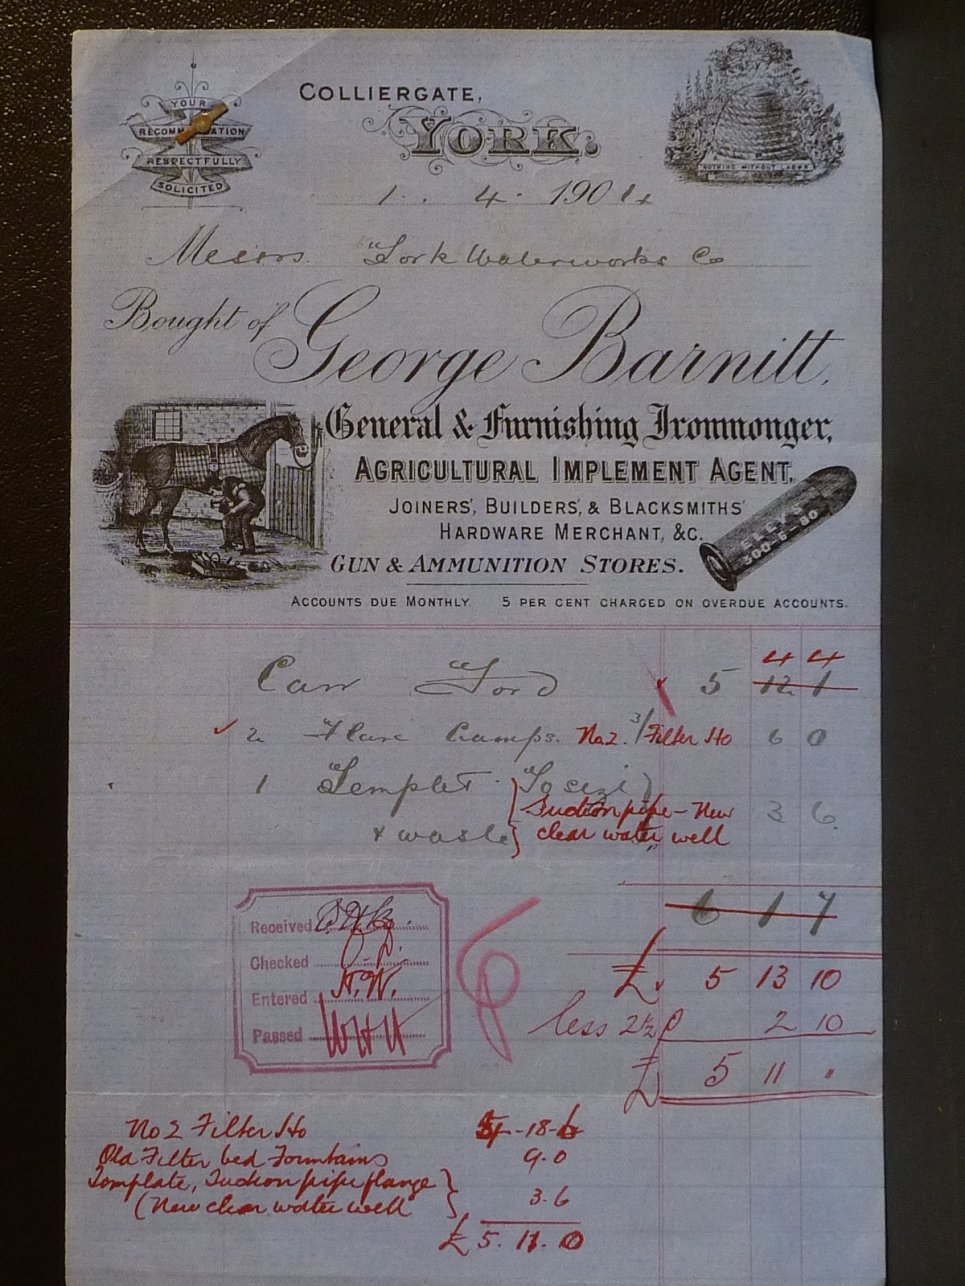 Hand written till receipt from 1901